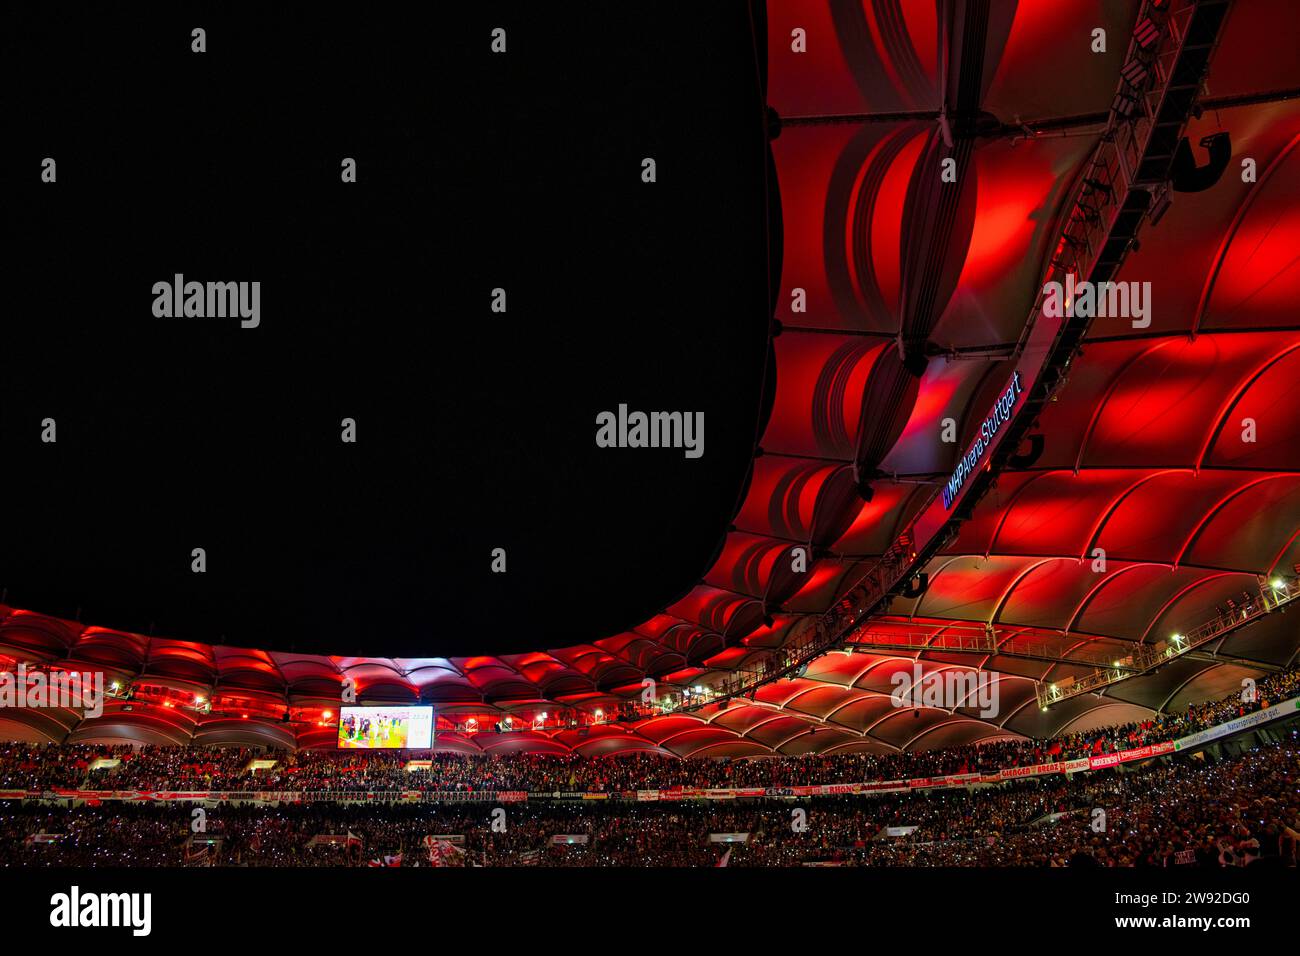 Nachtaufnahme, rot beleuchtetes Stadiondach, Tribüne Dach, Smartphones, Taschenlampen, Partyatmosphäre, Stimmung, MHPArena, MHP Arena Stuttgart Stockfoto